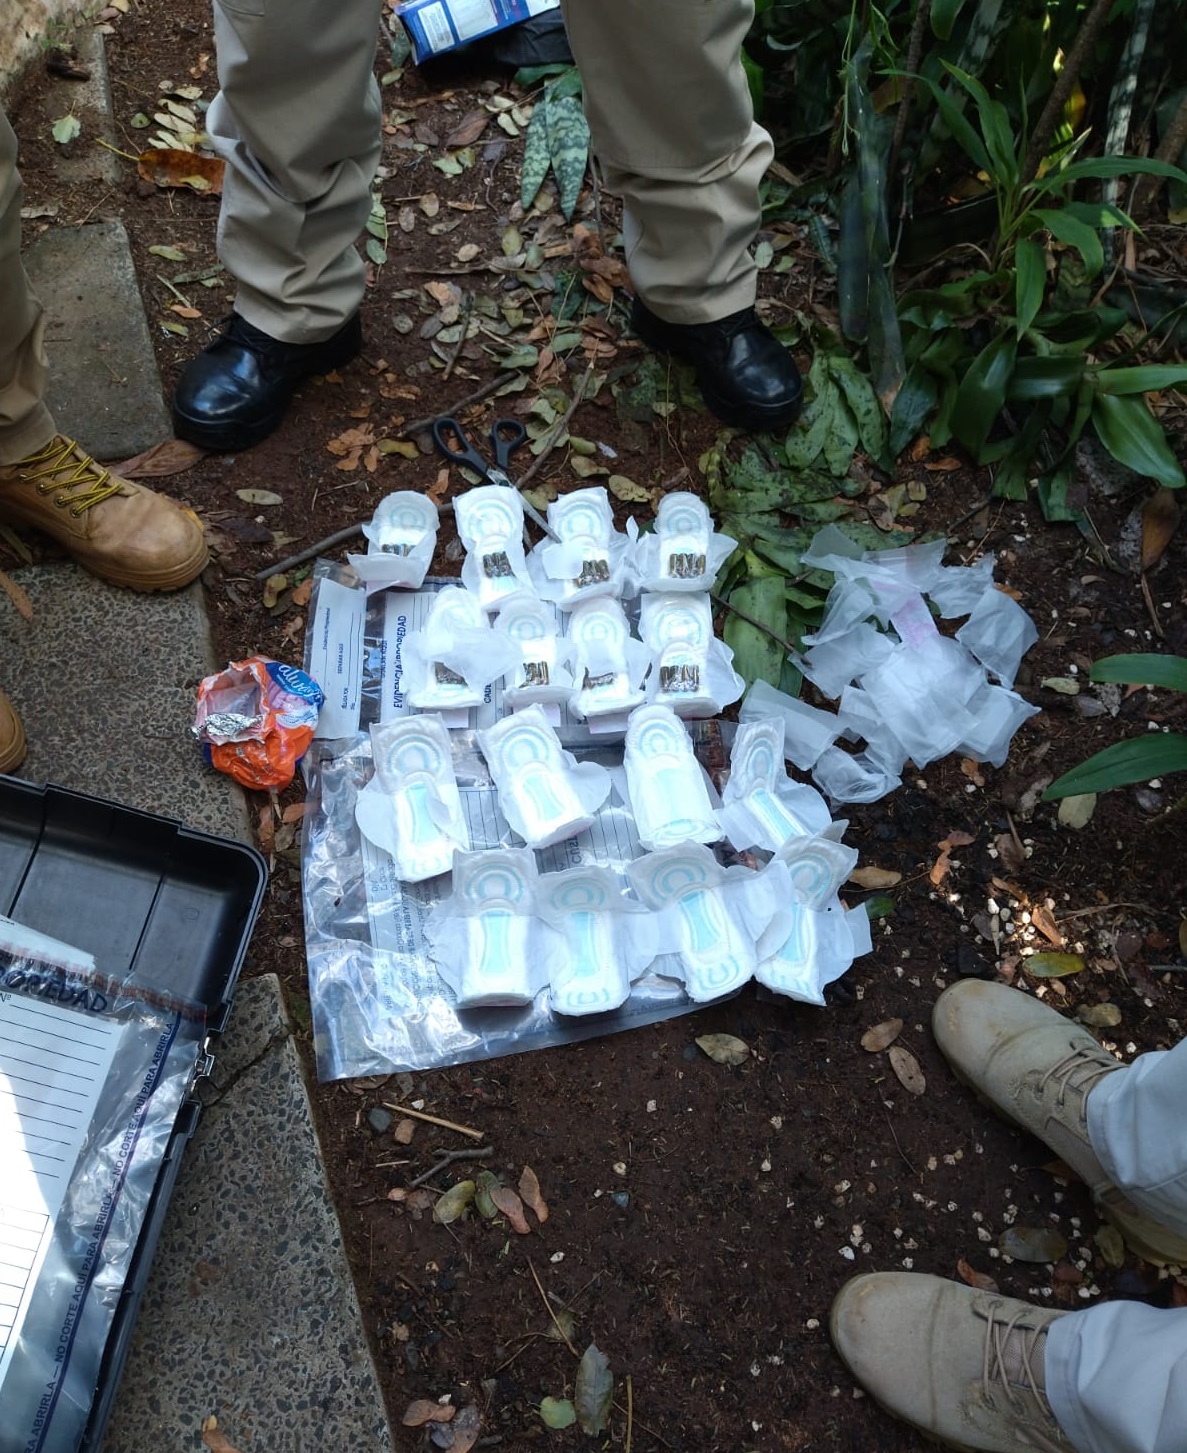 Paquetes de municiones hallados por agentes de la Policía. Foto: gentileza.